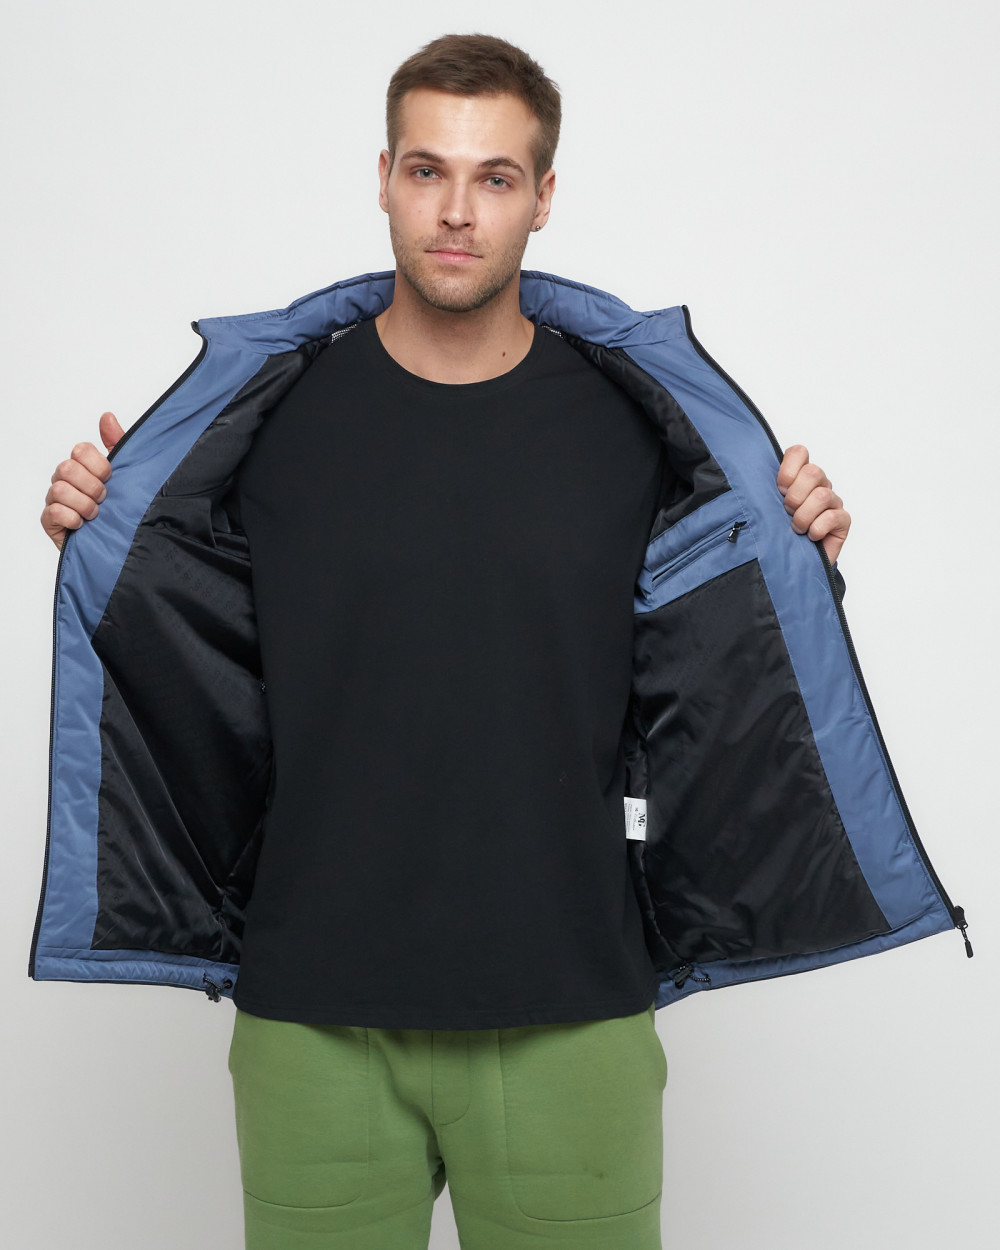 Купить куртку мужскую спортивную весеннюю оптом от производителя недорого в Москве 8815S 1